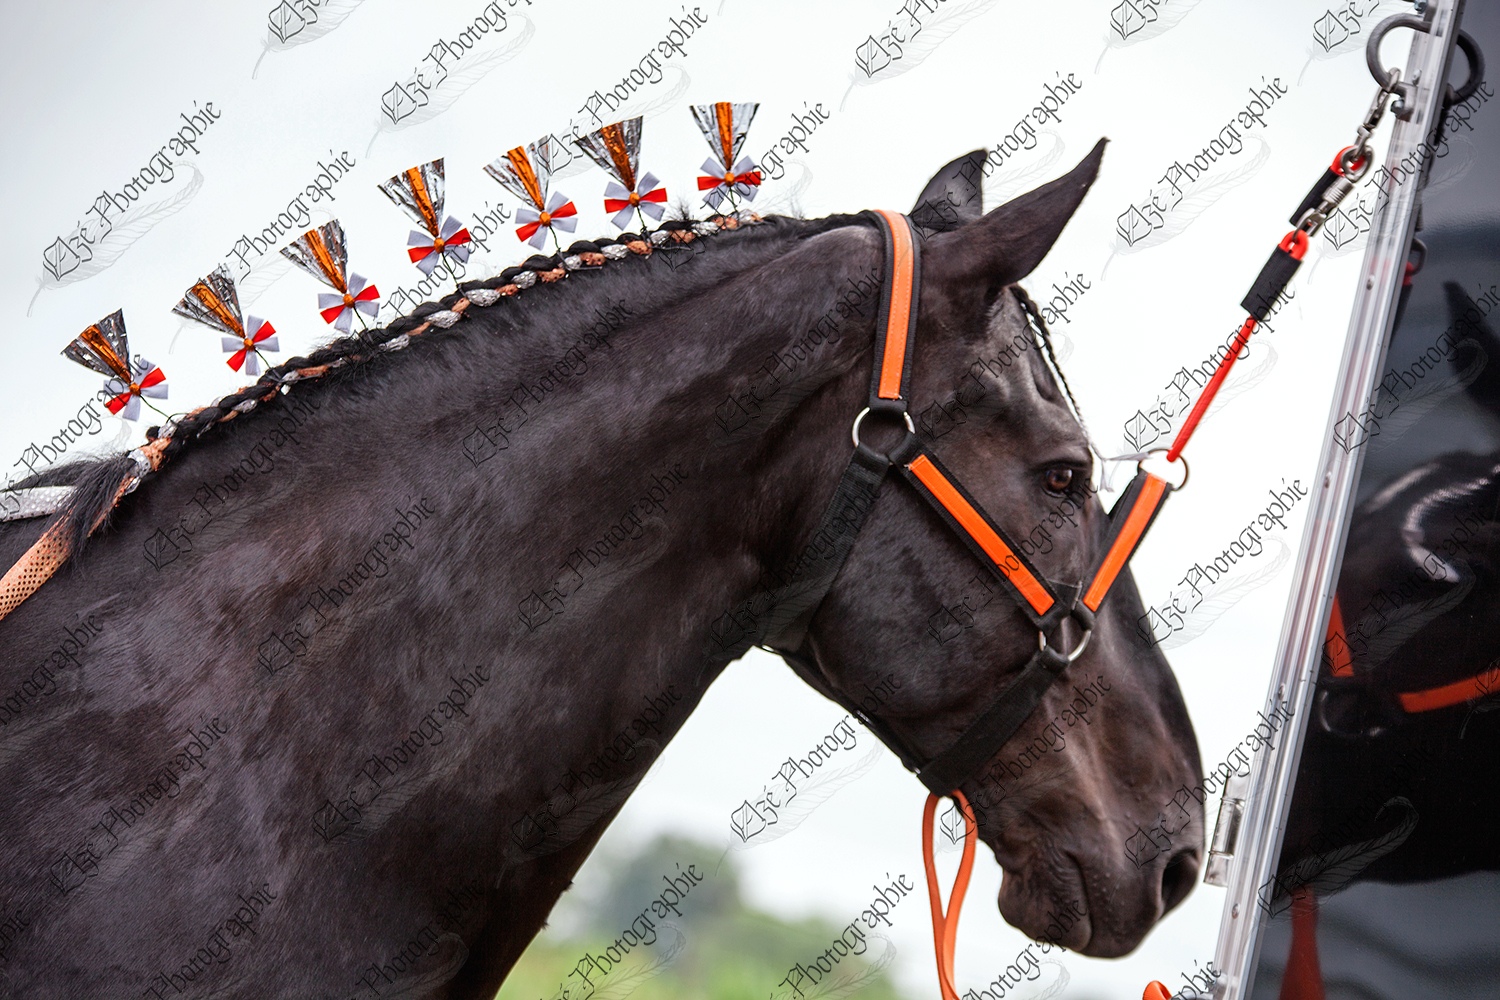 elze_photo_6575_corde_cheval_noir_black_horse_show